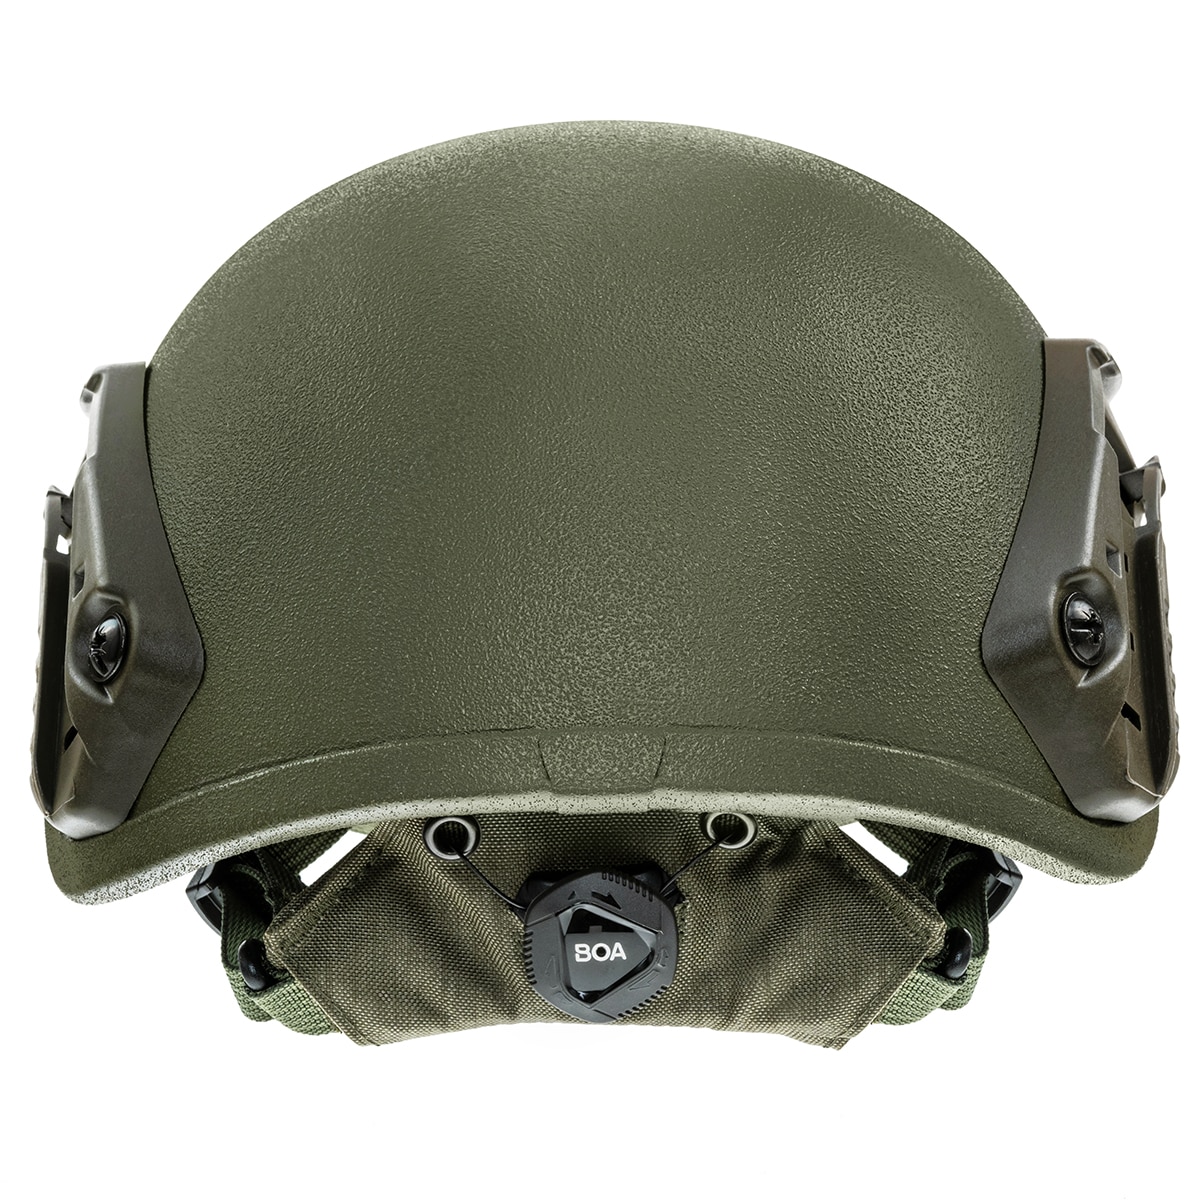 Легкий куленепробивний шолом Maskpol LHO-01 - Ranger Green